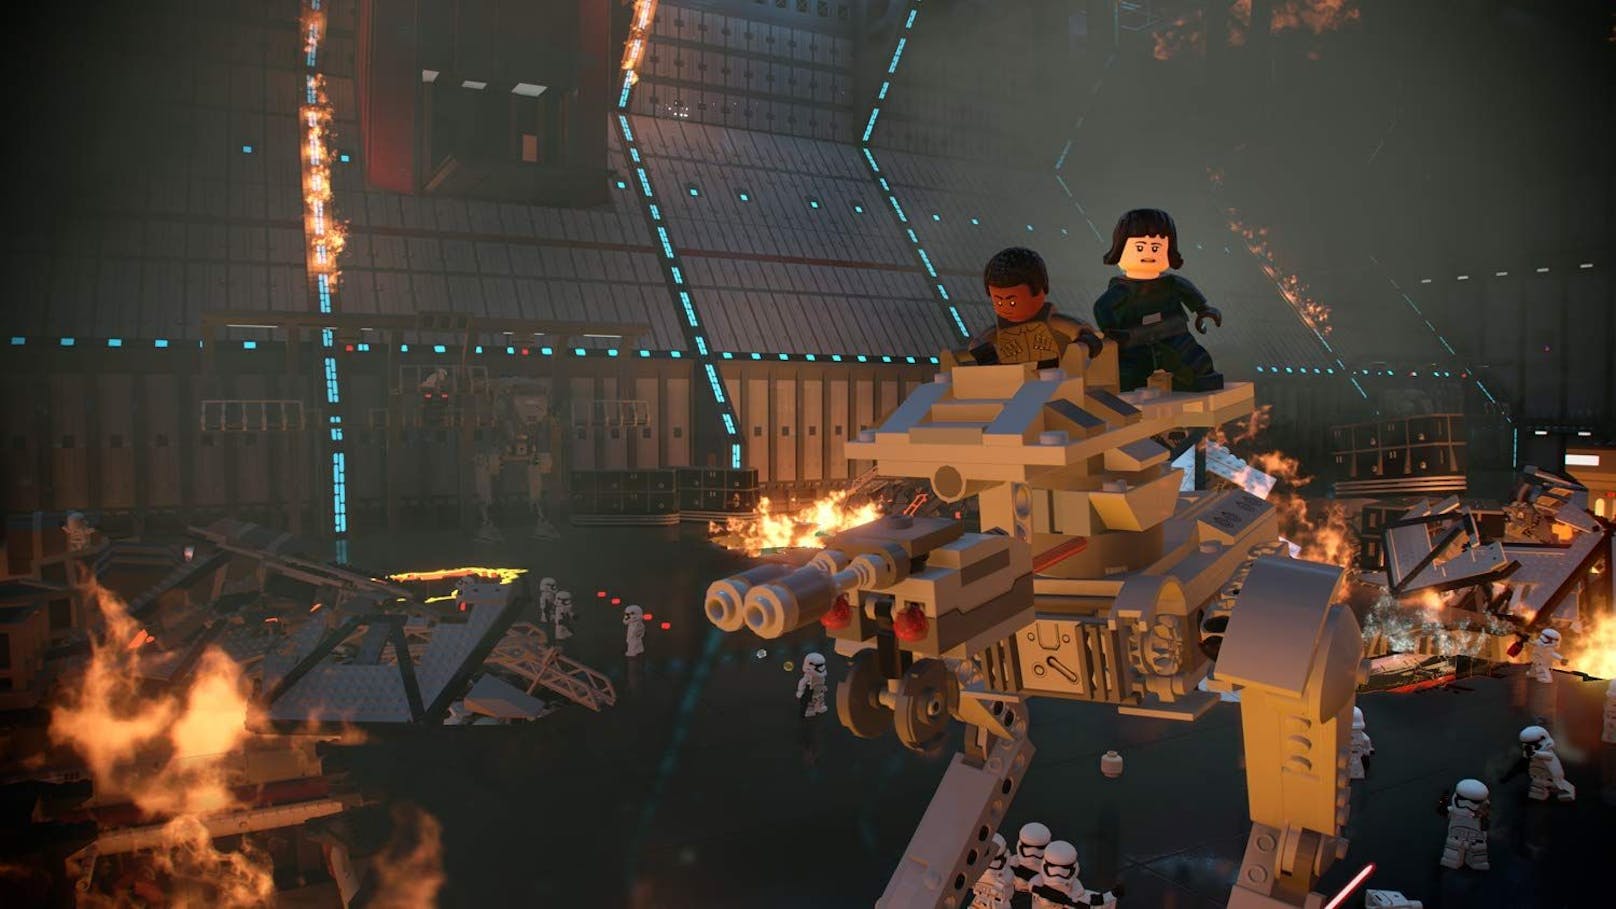 Am 5. April erscheint mit "Lego Star Wars: The Skywalker Saga" das bisher größte Abenteuer im Baustein-Universum und entführt Spieler dabei einmal mehr in eine "weit, weit entfernte Galaxis".